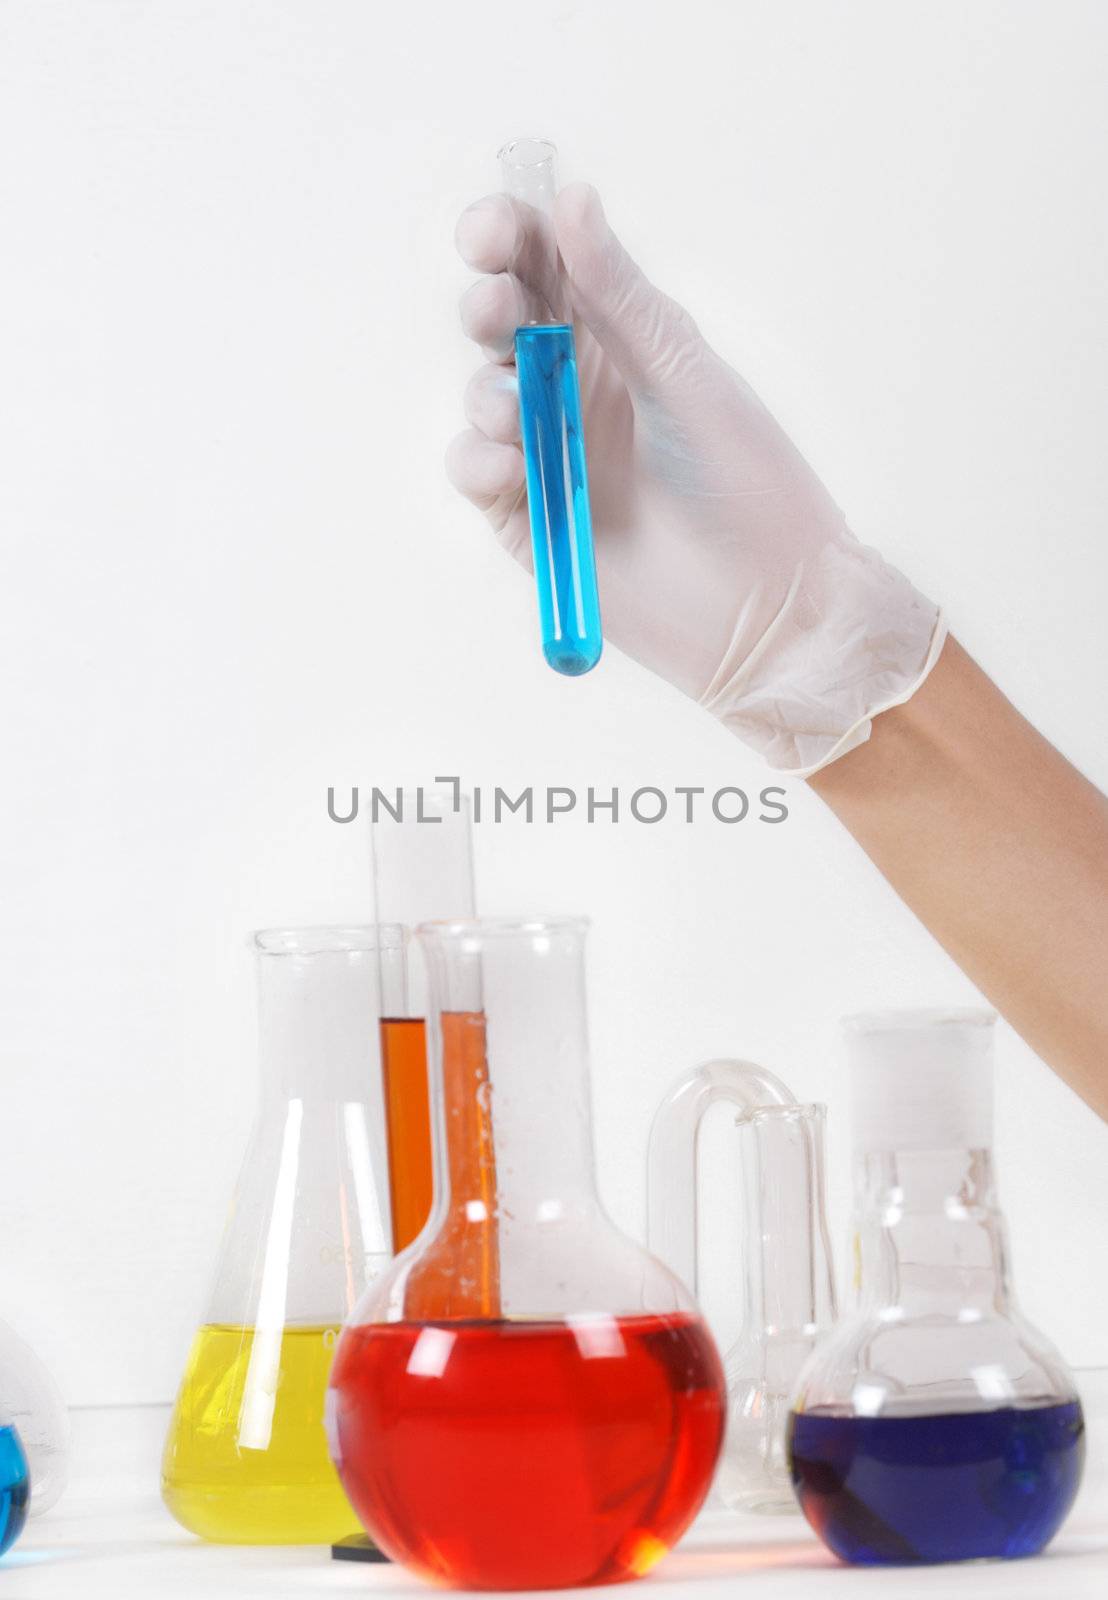 In laboratory by petrkurgan